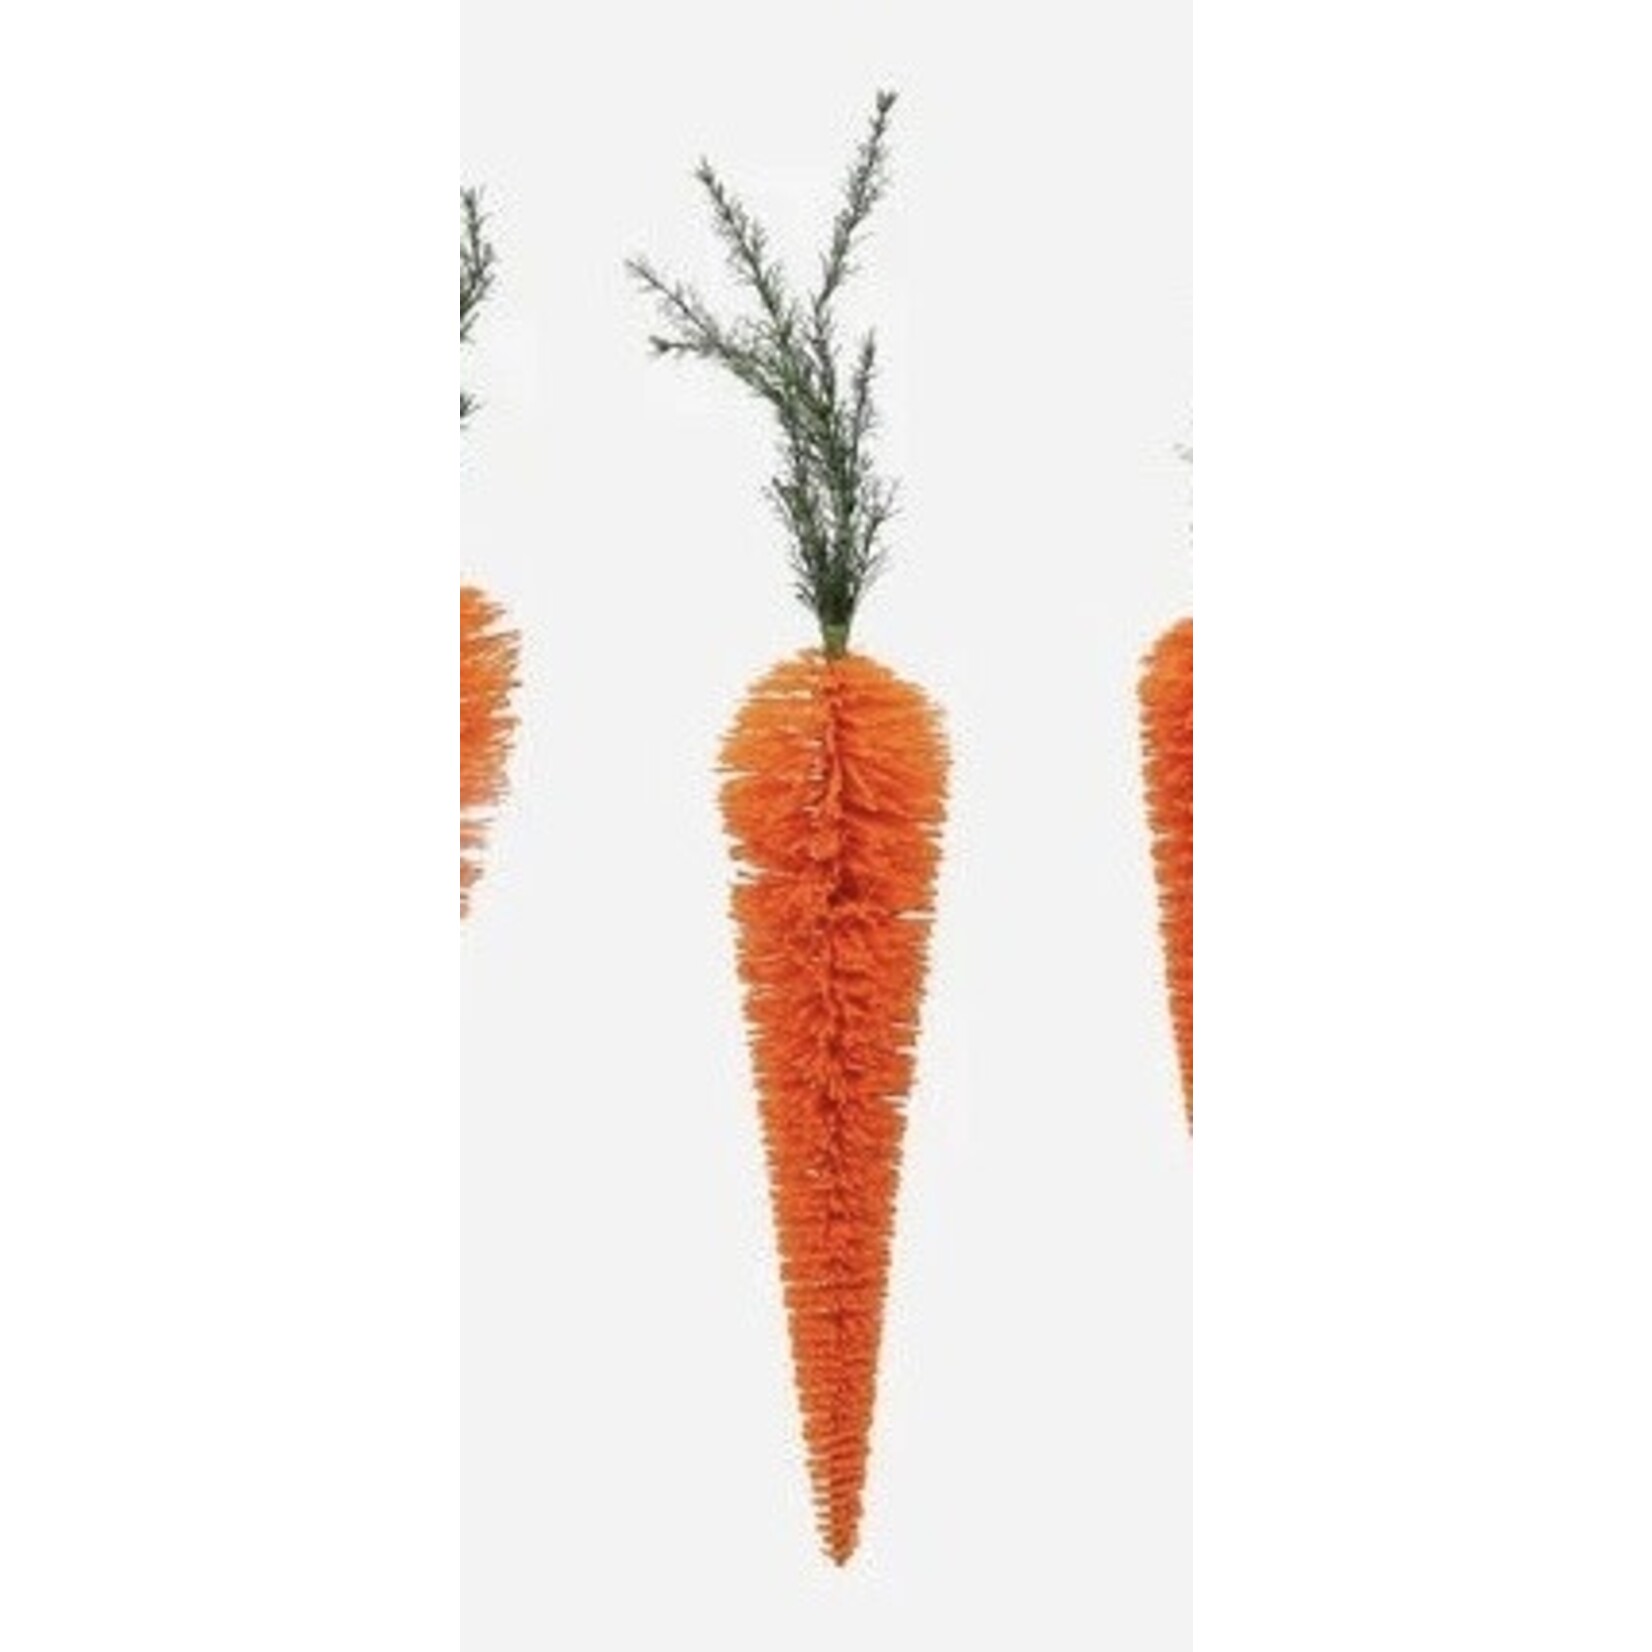 ONE HUNDRED 80 DEGREES Hanging Carrot 32"